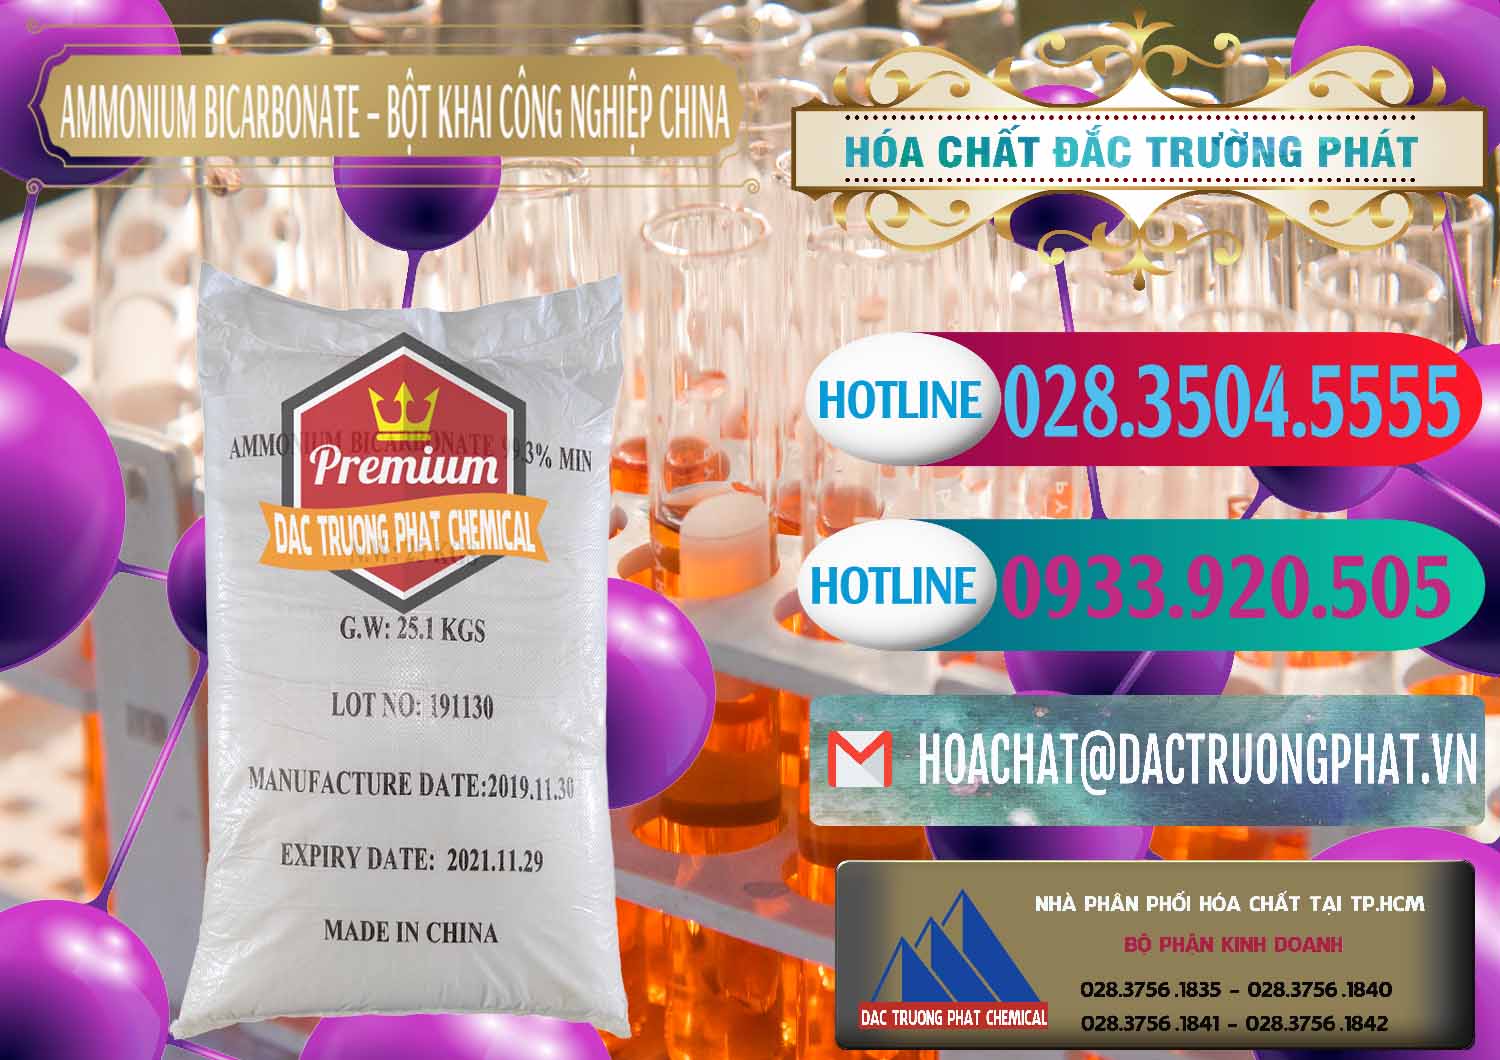 Cty chuyên phân phối ( bán ) Ammonium Bicarbonate – Bột Khai Công Nghiệp Trung Quốc China - 0020 - Đơn vị chuyên phân phối và bán hóa chất tại TP.HCM - truongphat.vn